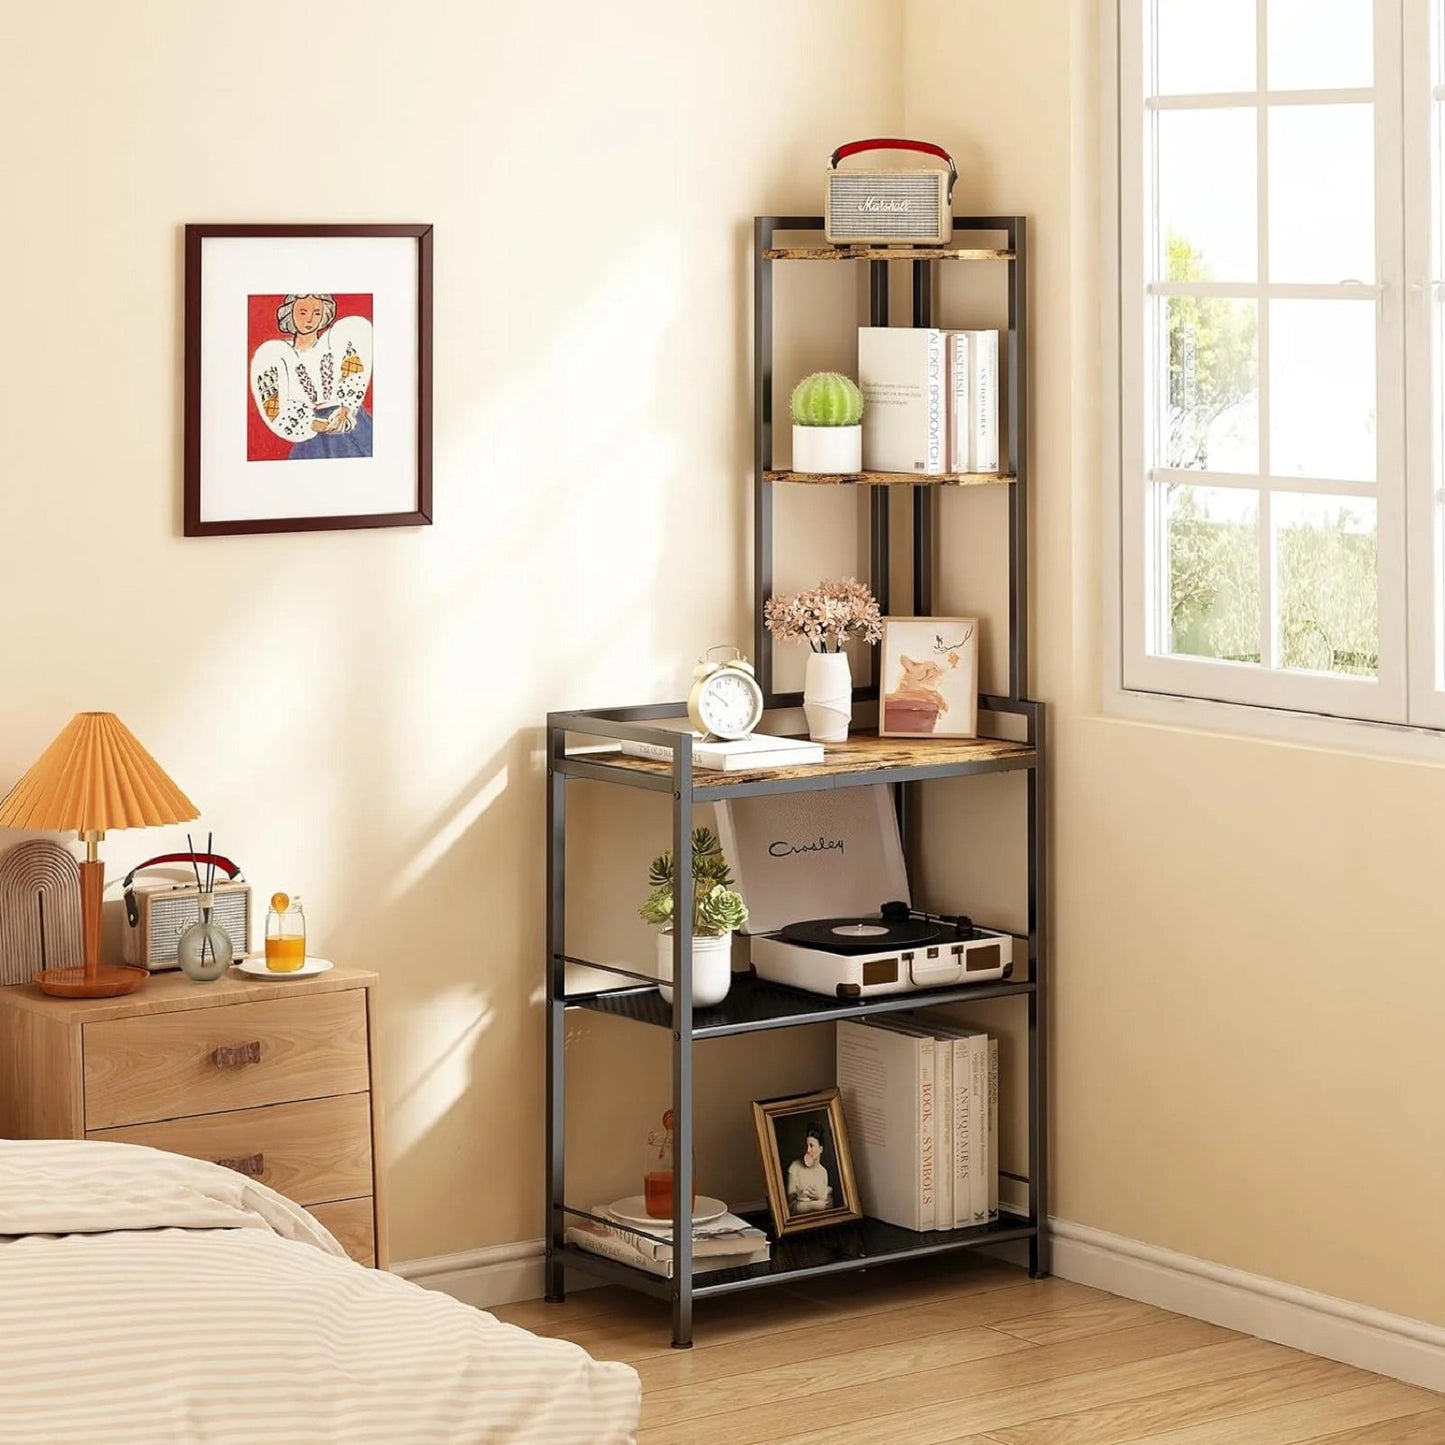 Algherohein Wood Modern 5-Tier Corner Bookshelf,Organization and Storage Shelves for Home Garden